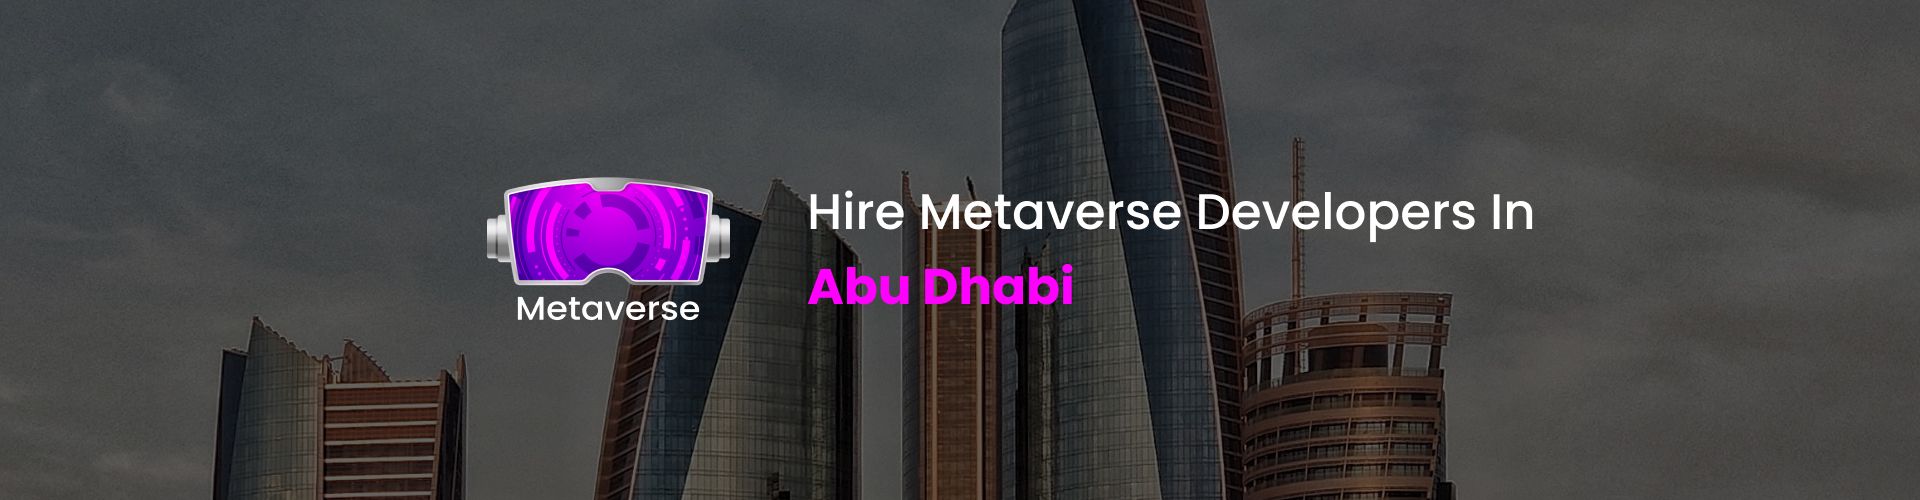 metaverse developers in abu dhabi